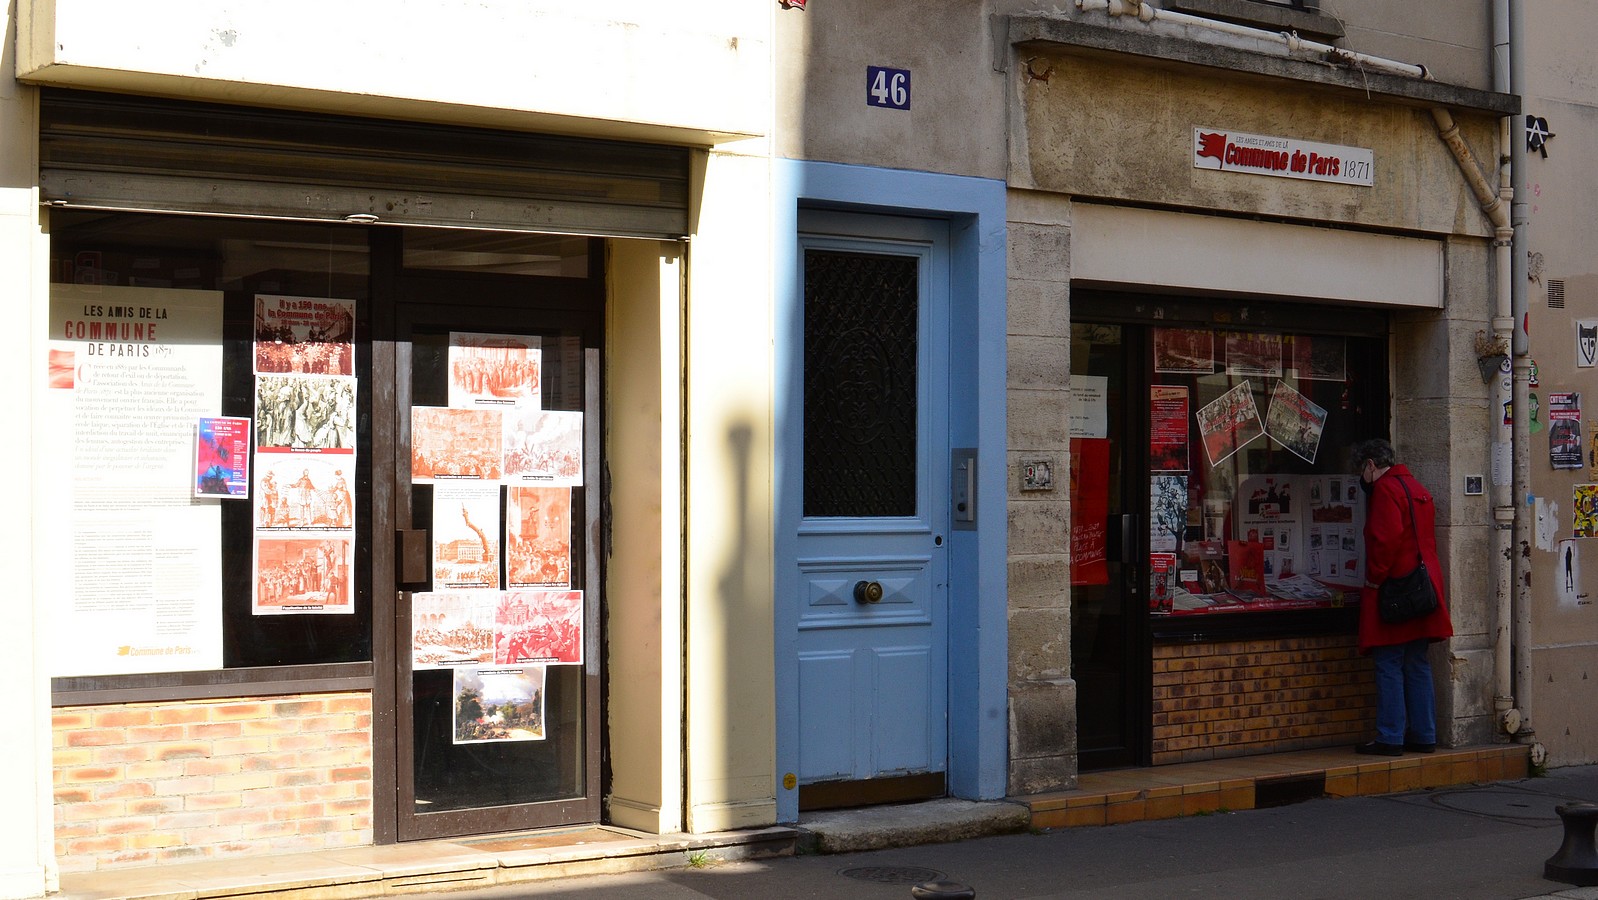 Siège de l'association des Amies et Amis de la Commune de Paris (46 rue des Cinq-Diamants - 75013 Paris)